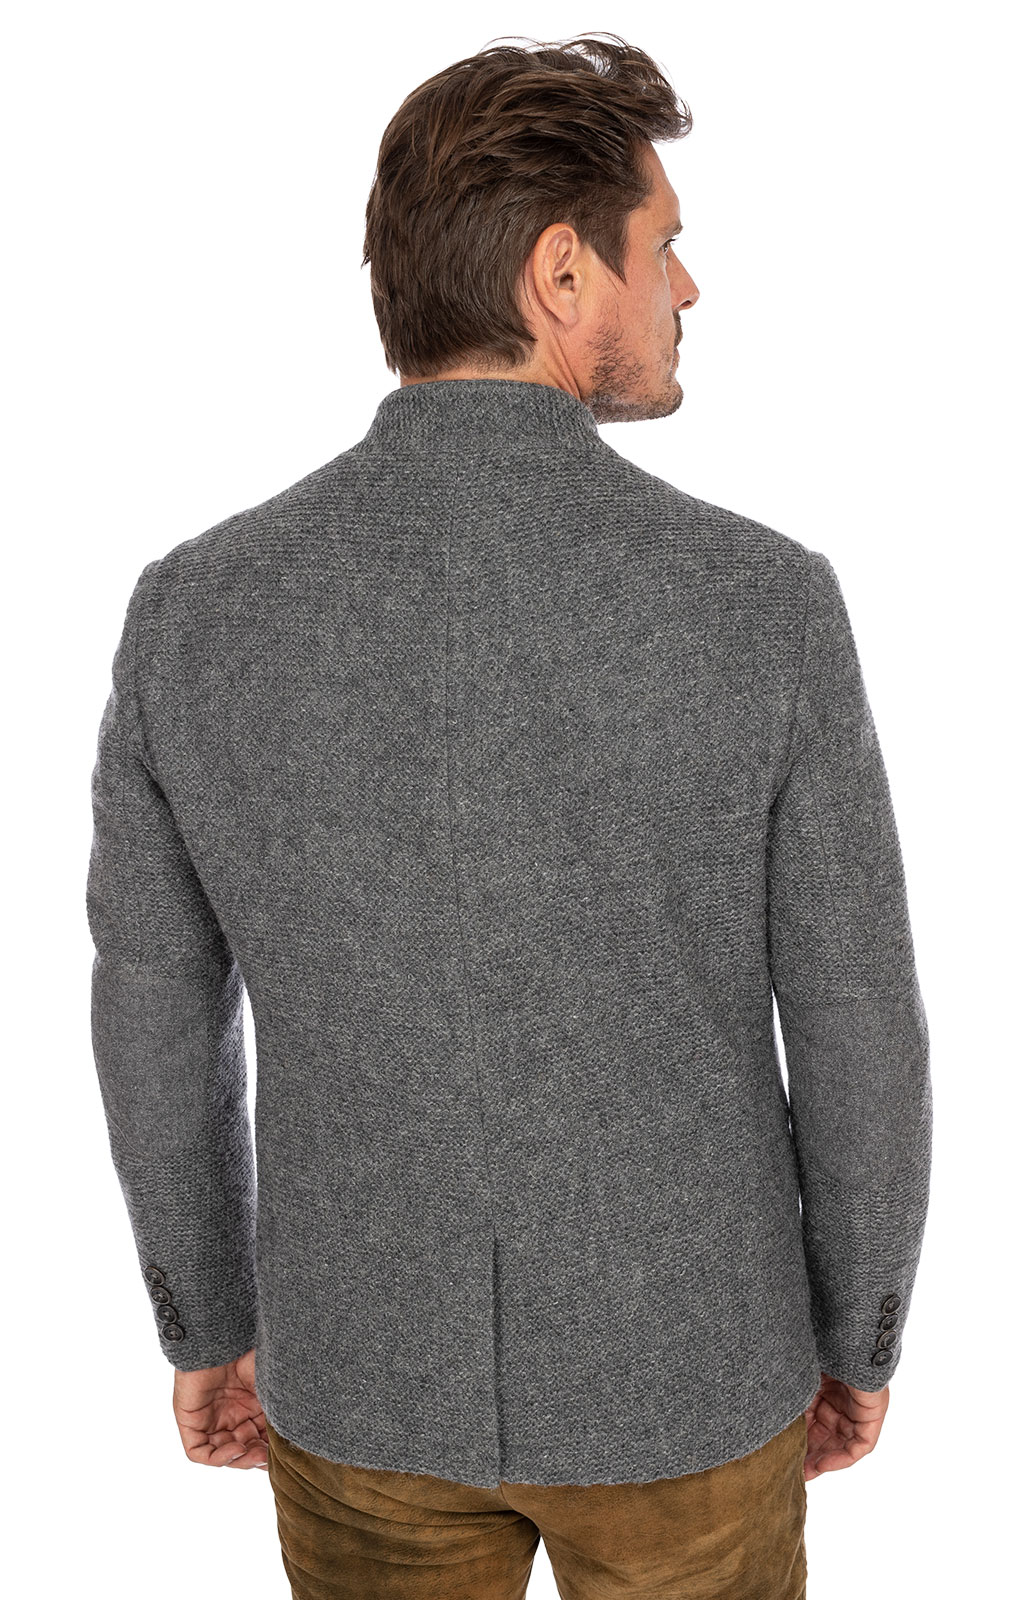 weitere Bilder von German traditional jacket KARSBACH middle gray